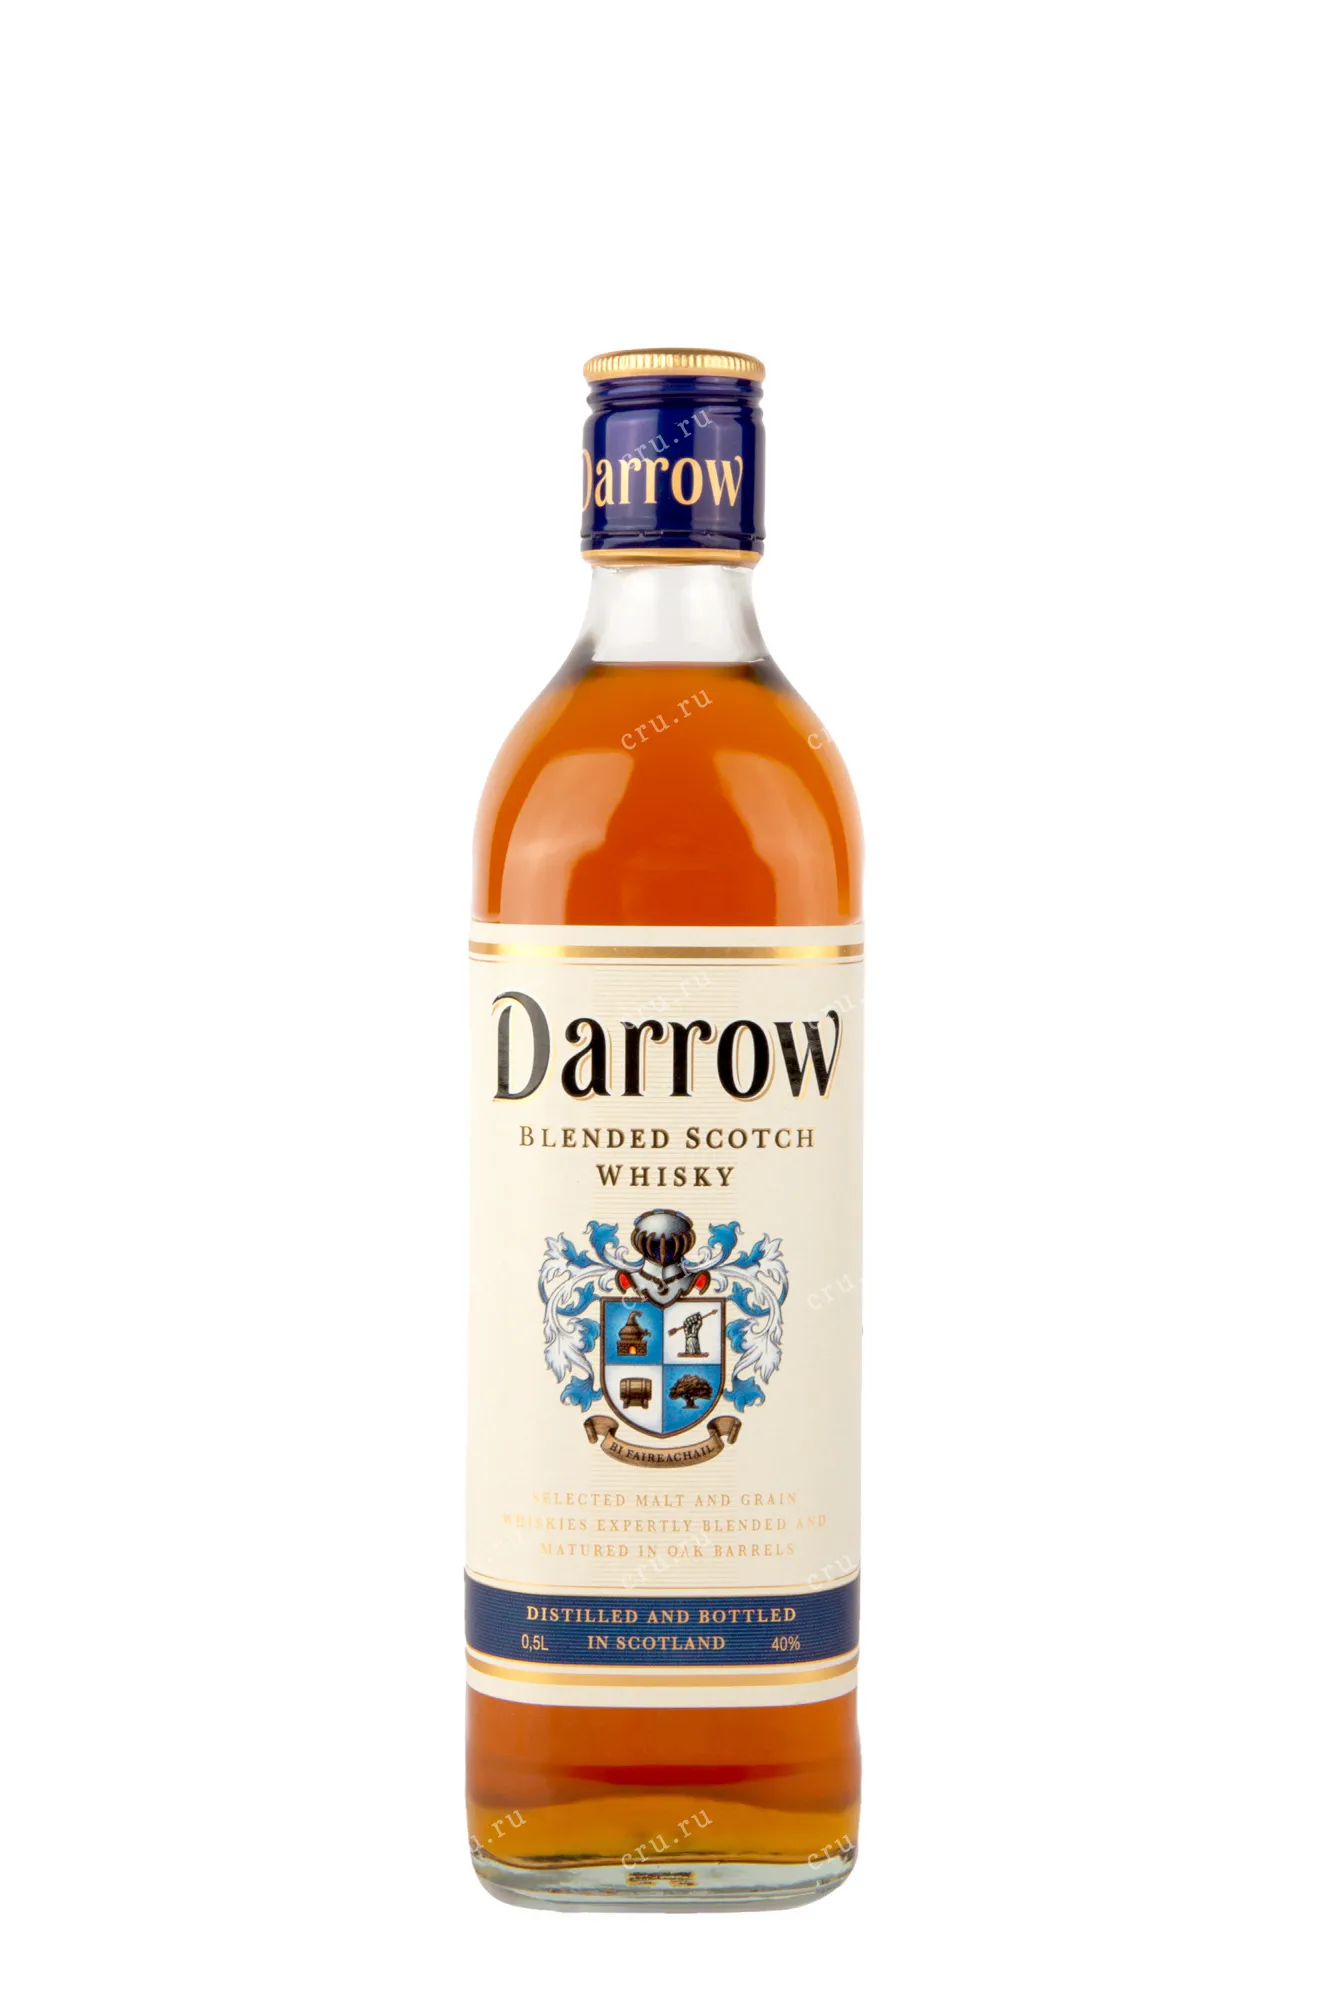 Darrow цена 0.7. Виски Darrow 0.5. Виски Дэрроу 0.5 шотландский купажированный. Виски Дэрроу шотл купаж 0.5. Darrow виски.